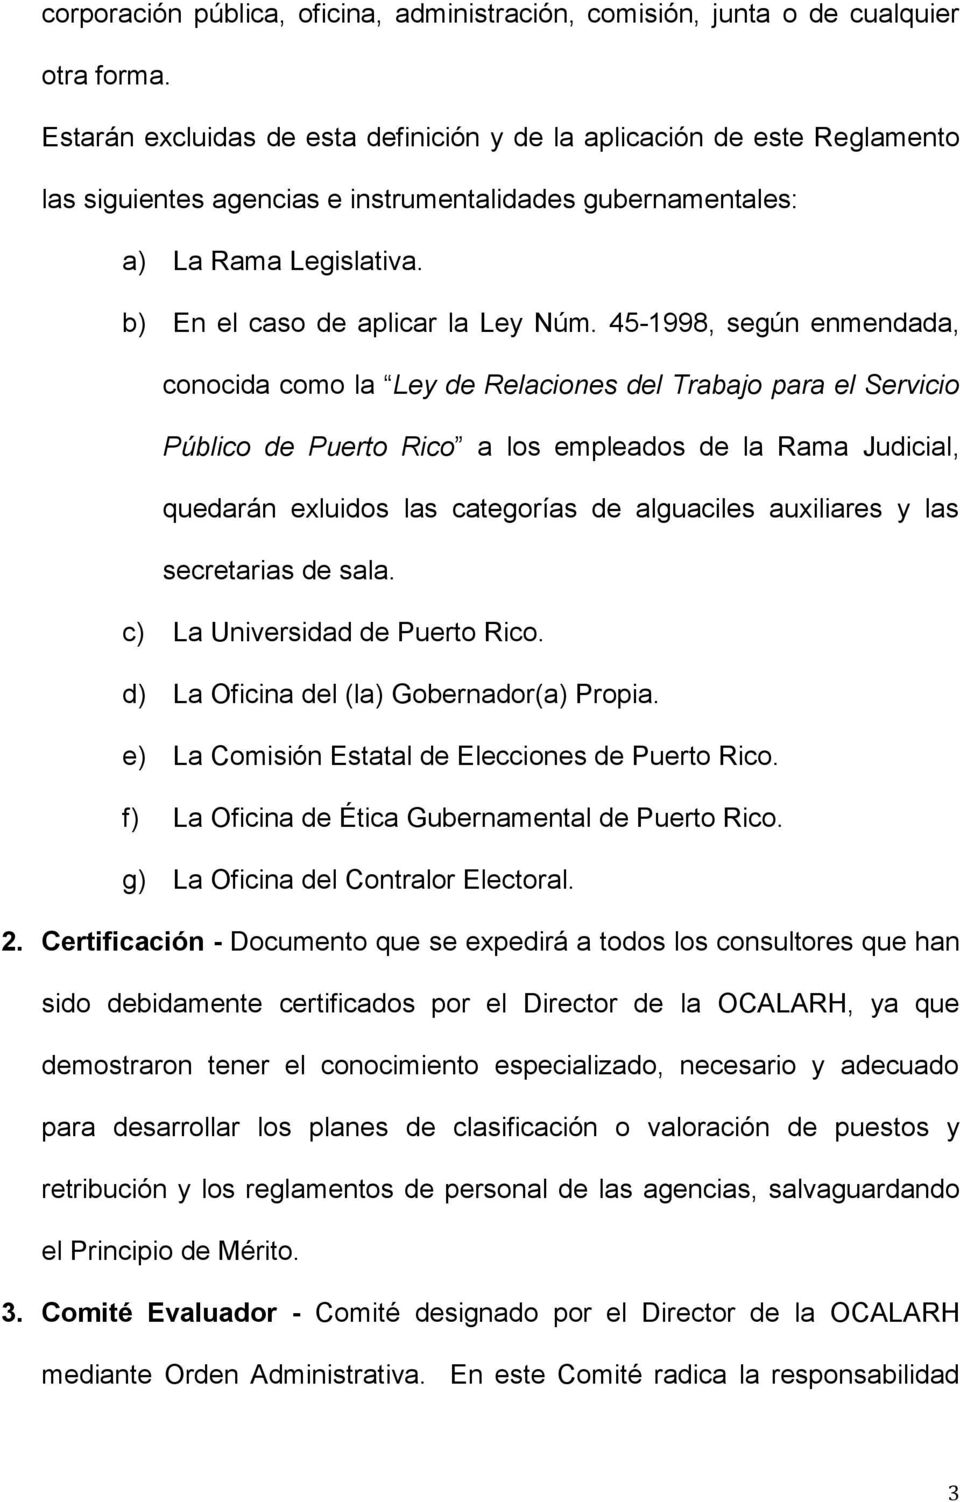 45-1998, según enmendada, conocida como la Ley de Relaciones del Trabajo para el Servicio Público de Puerto Rico a los empleados de la Rama Judicial, quedarán exluidos las categorías de alguaciles